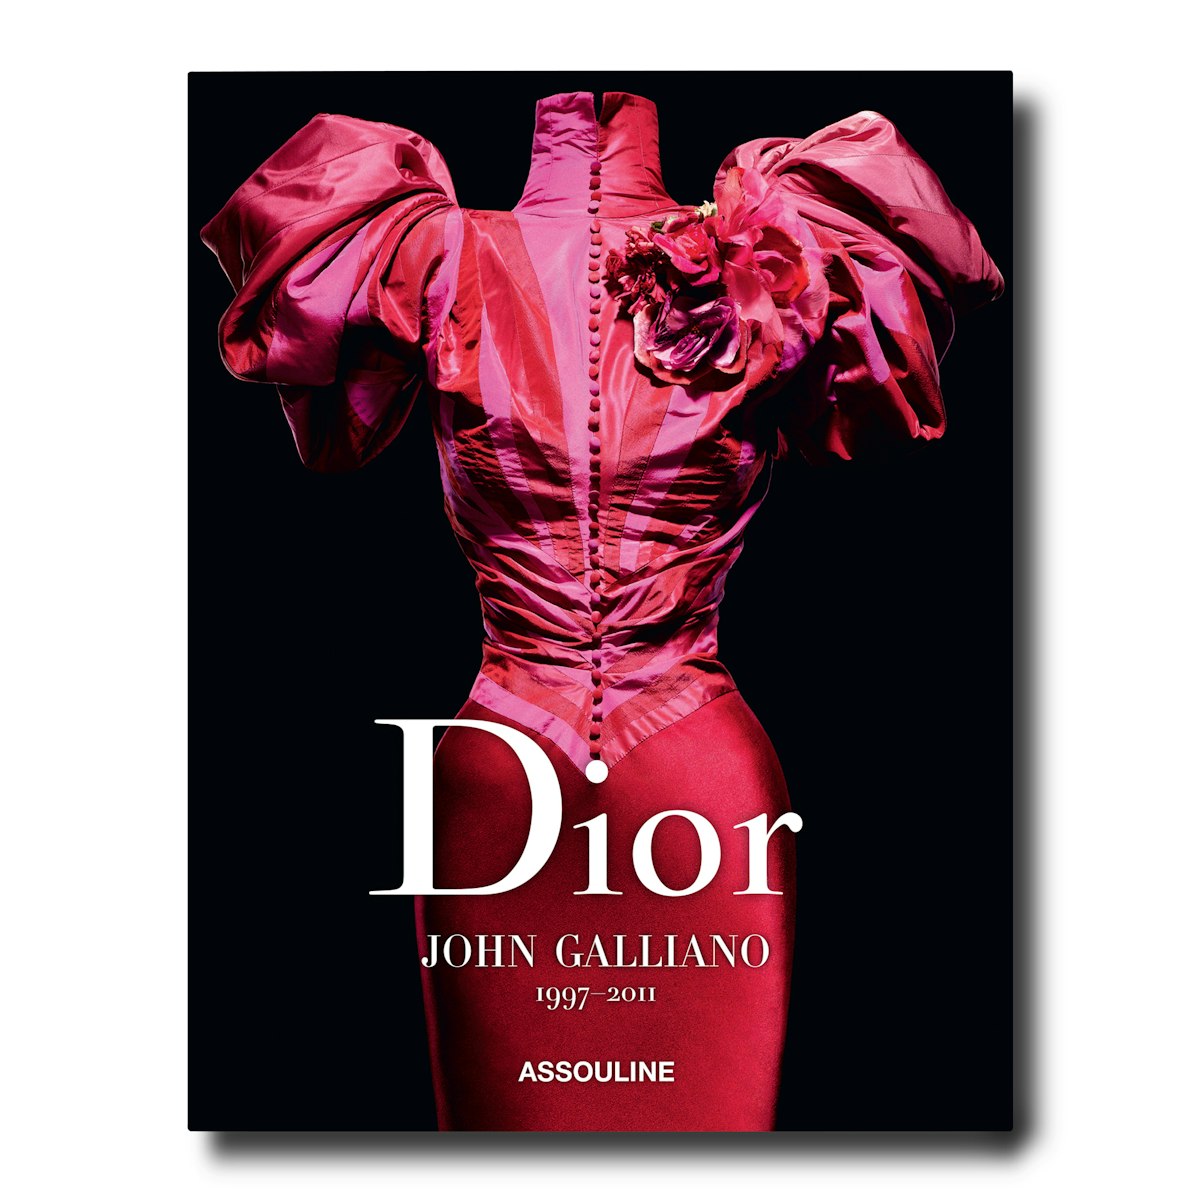 John Galliano for Dior  inspiring collection